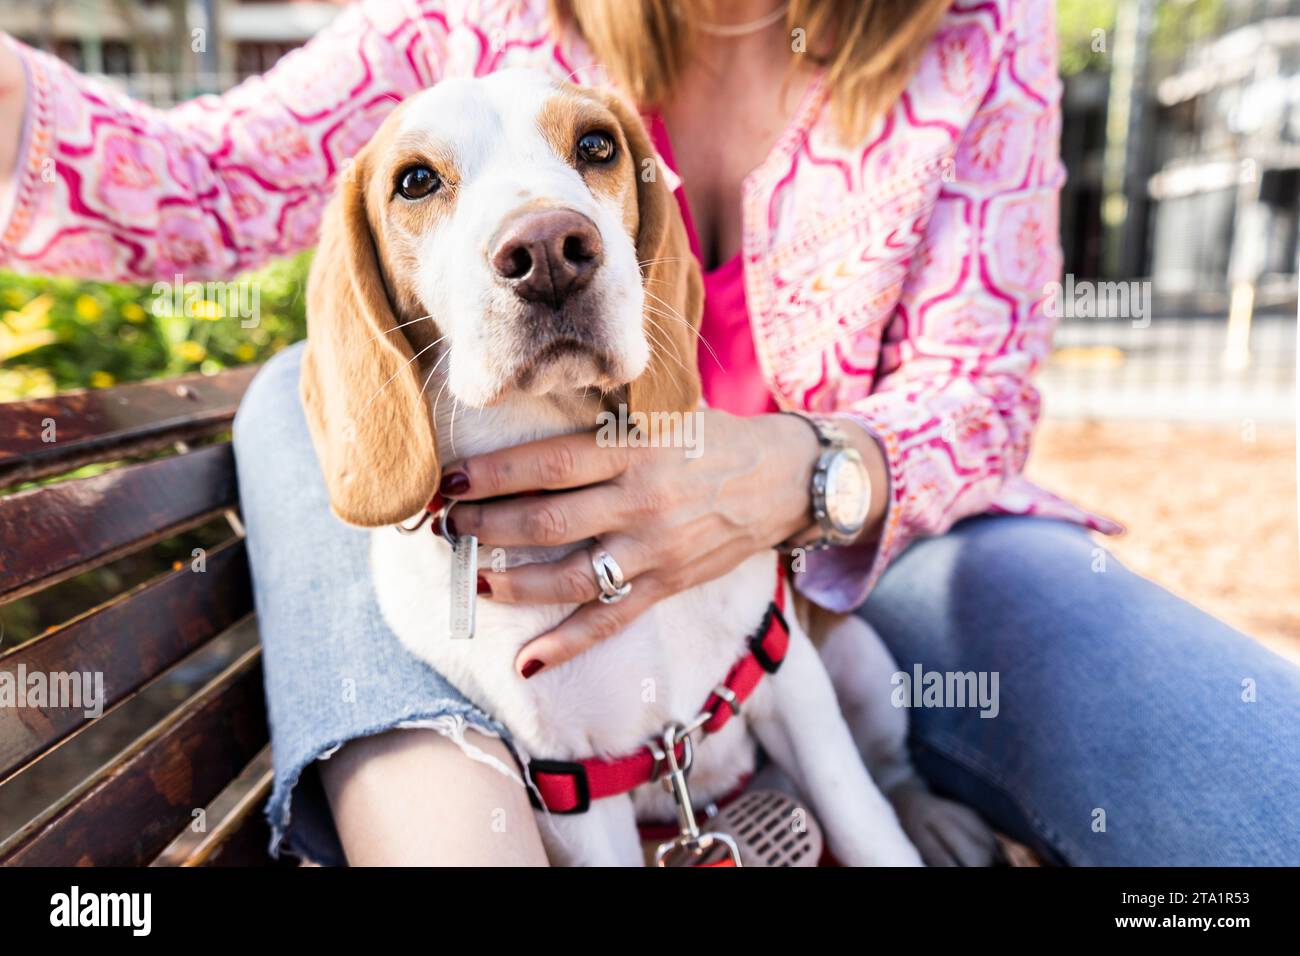 Beagle-Hund mit rotem Gurtzeug, der mit seinem Besitzer auf einer Holzbank sitzt. Stockfoto